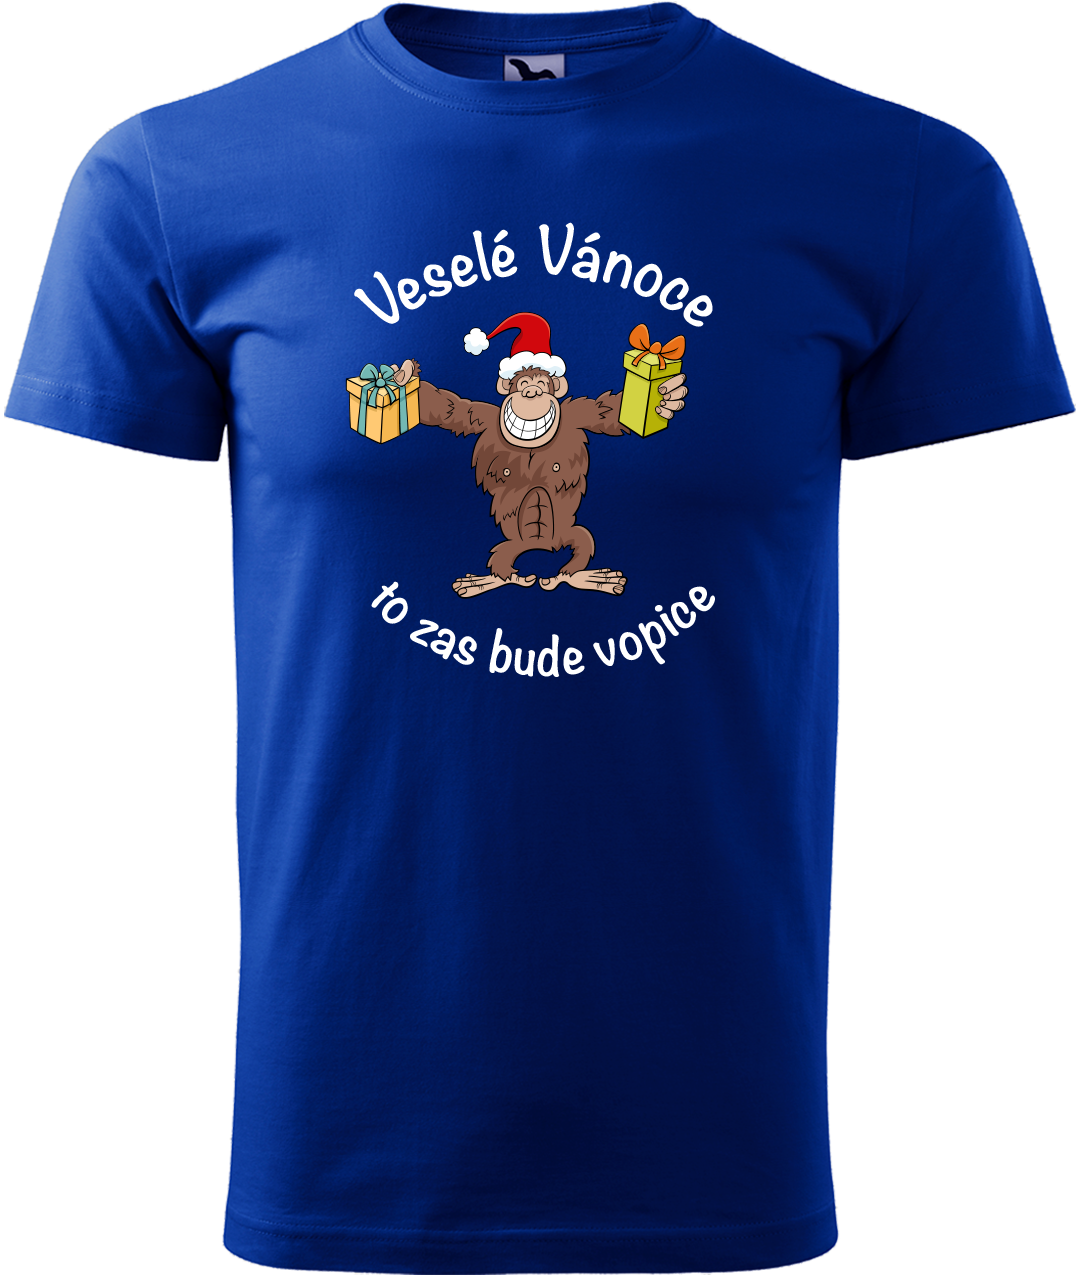 Pánské vánoční tričko - Veselé Vánoce to zas bude vopice (hnědý opičák) Velikost: L, Barva: Královská modrá (05)